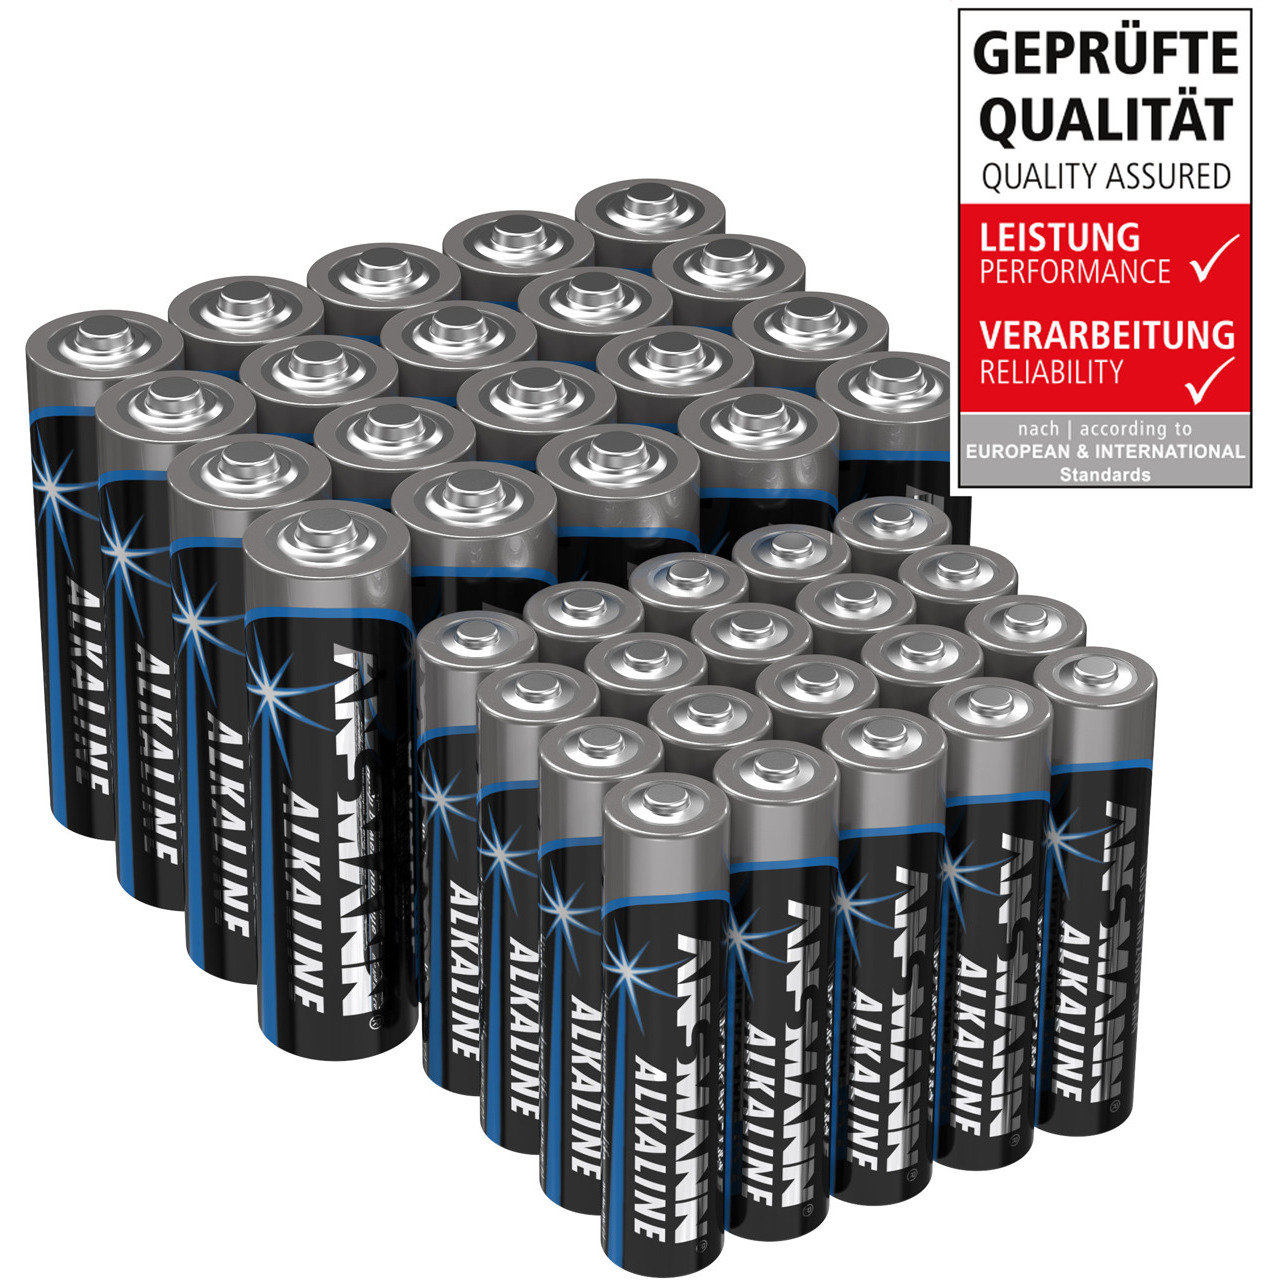 Ansmann Alkaline Batterie Vorratspack- 20x Mignon AA- 20x Micro AAA